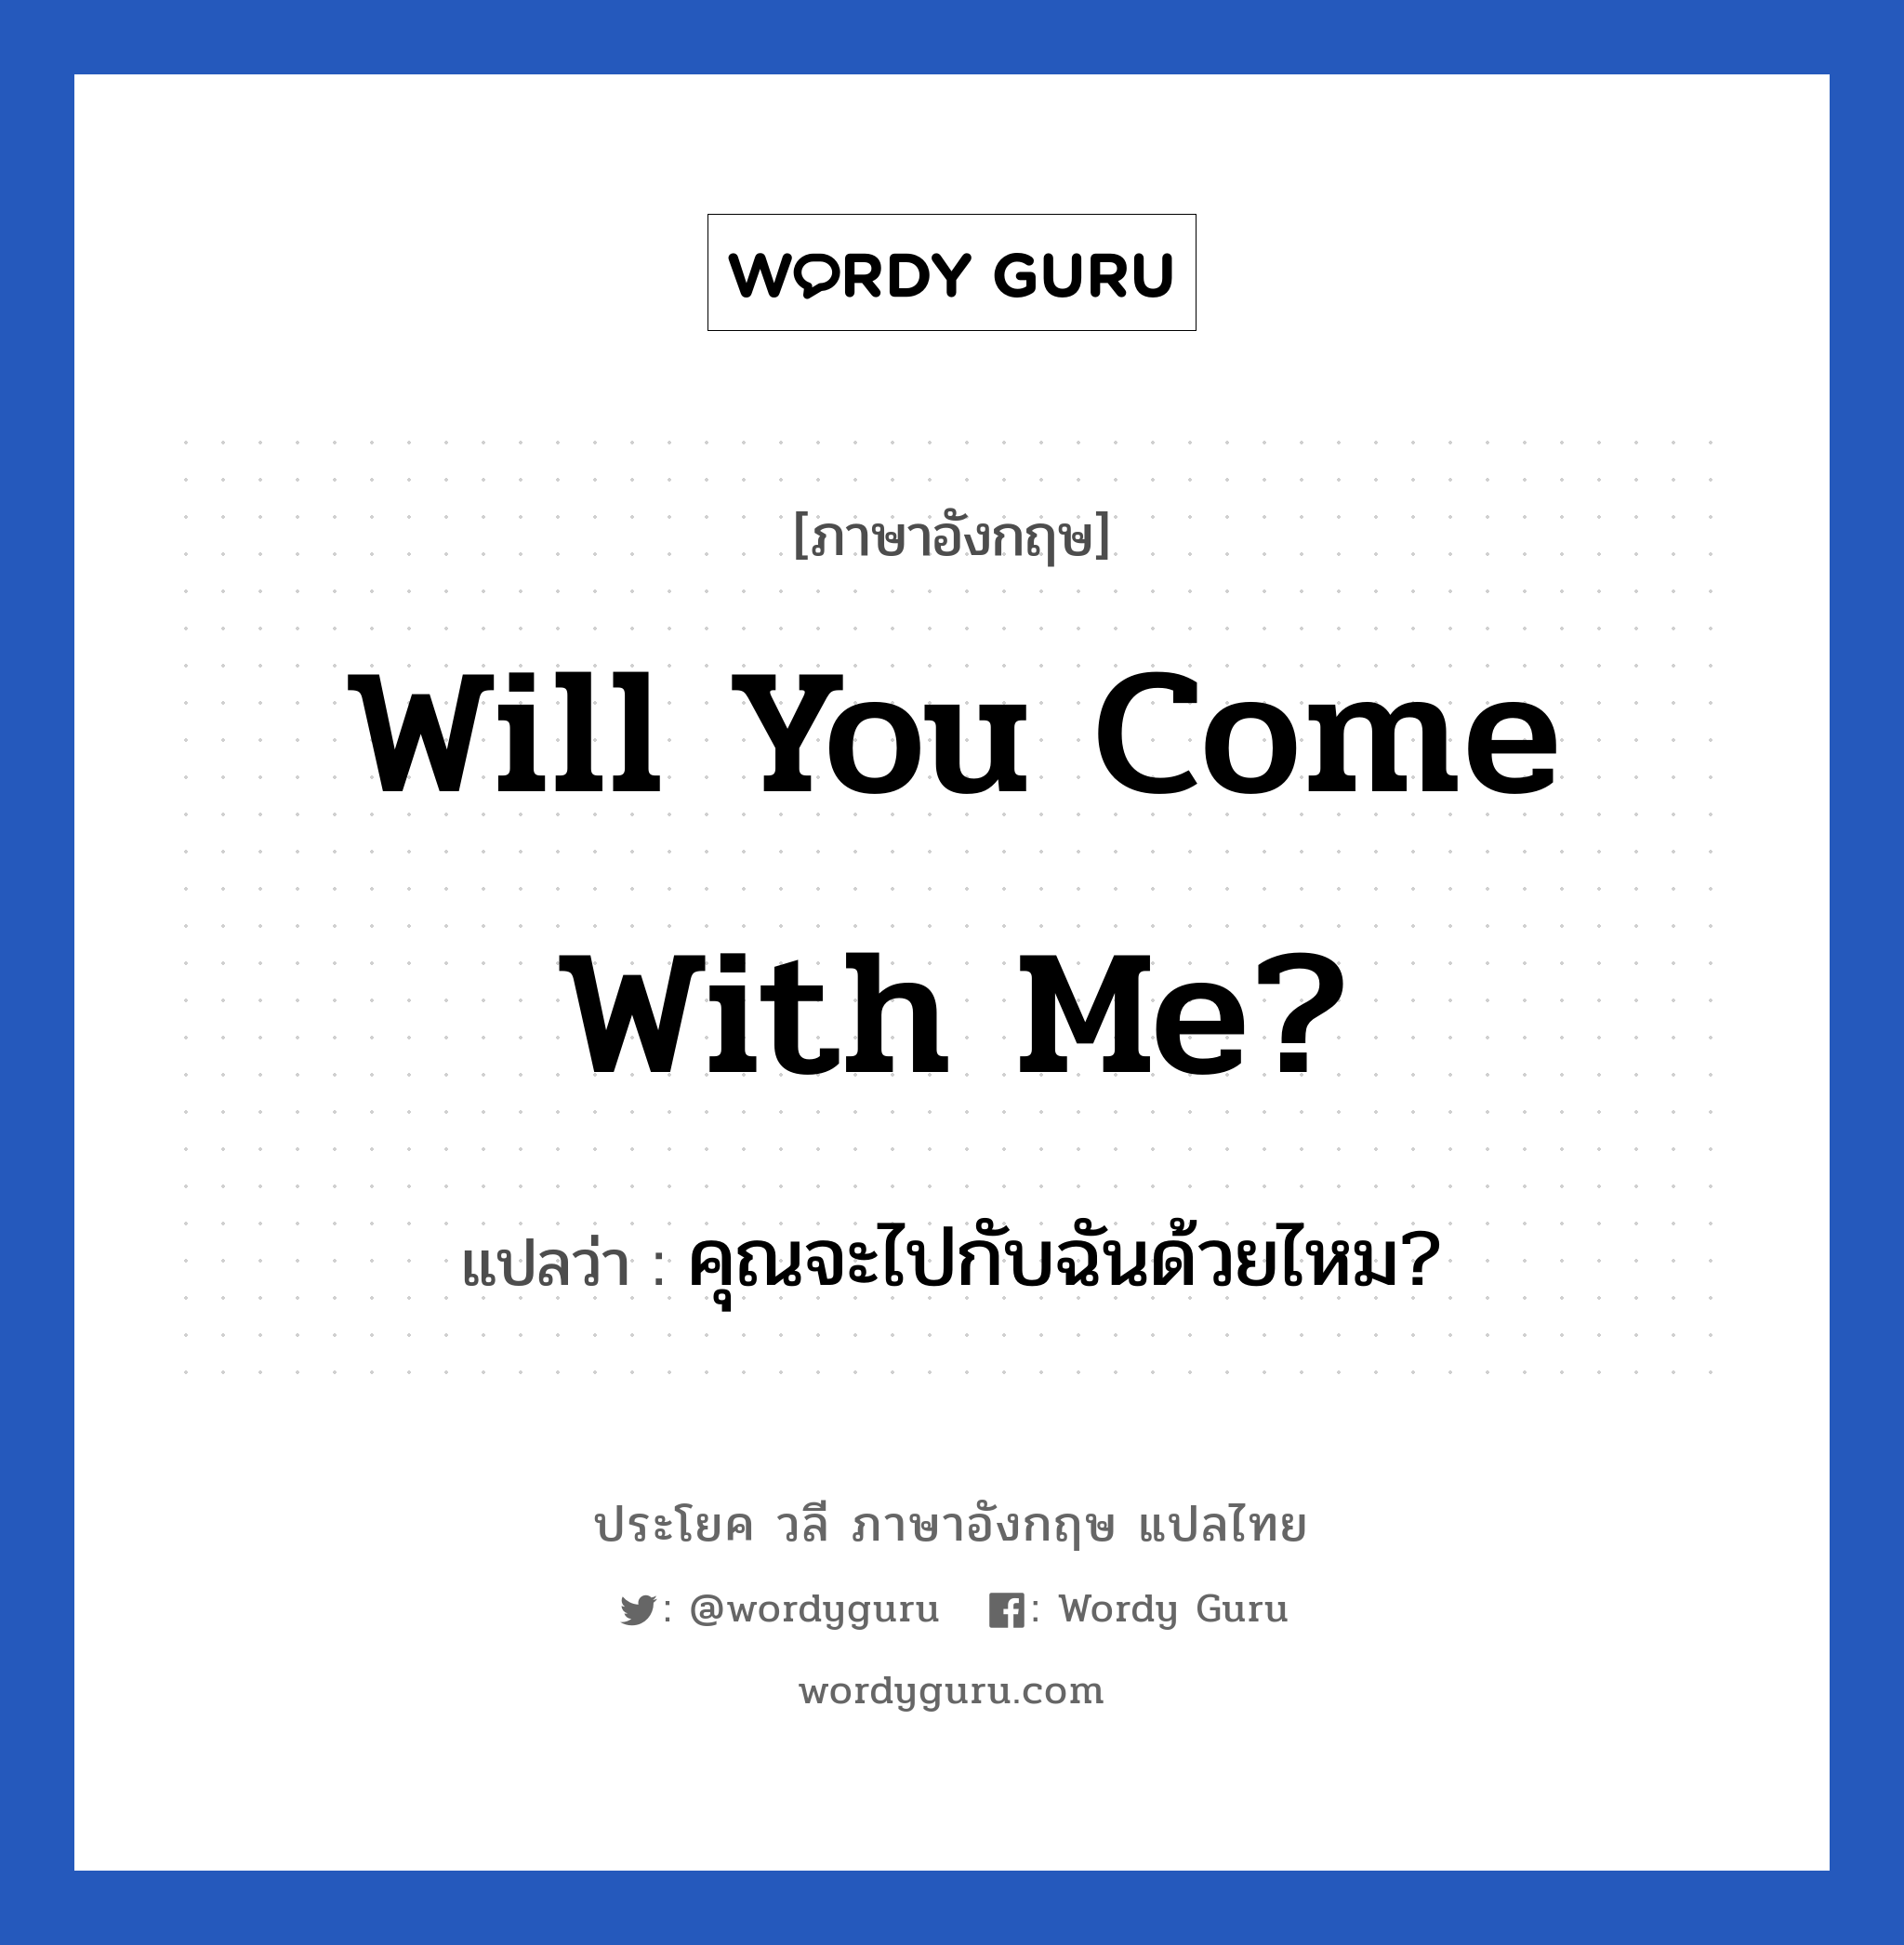 คุณจะไปกับฉันด้วยไหม? ภาษาอังกฤษ?, วลีภาษาอังกฤษ คุณจะไปกับฉันด้วยไหม? แปลว่า Will you come with me?